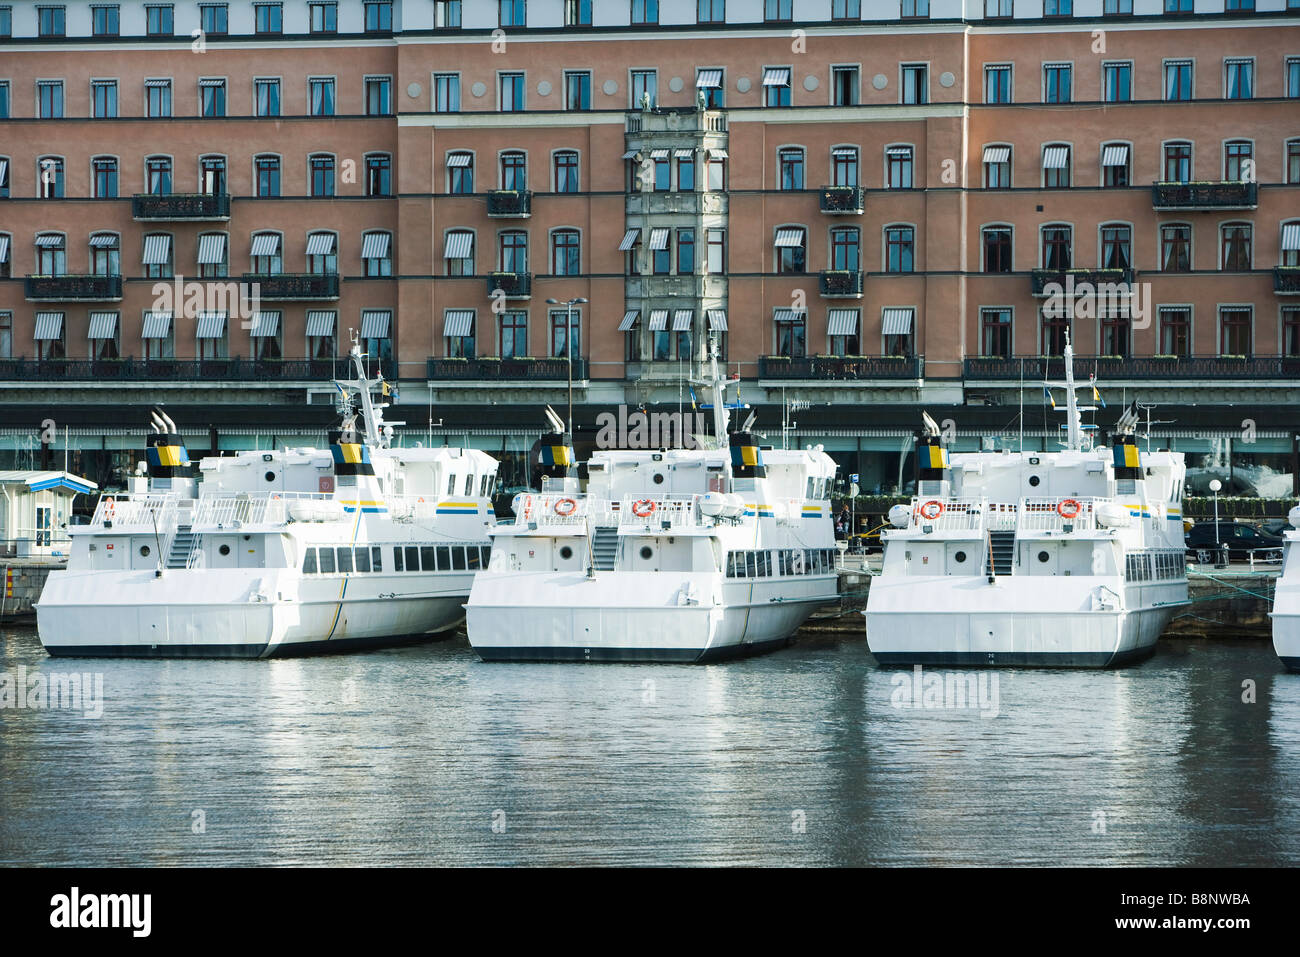 La Suède, Stockholm, les yachts amarrés dans le canal avant de les immeubles à appartements Banque D'Images